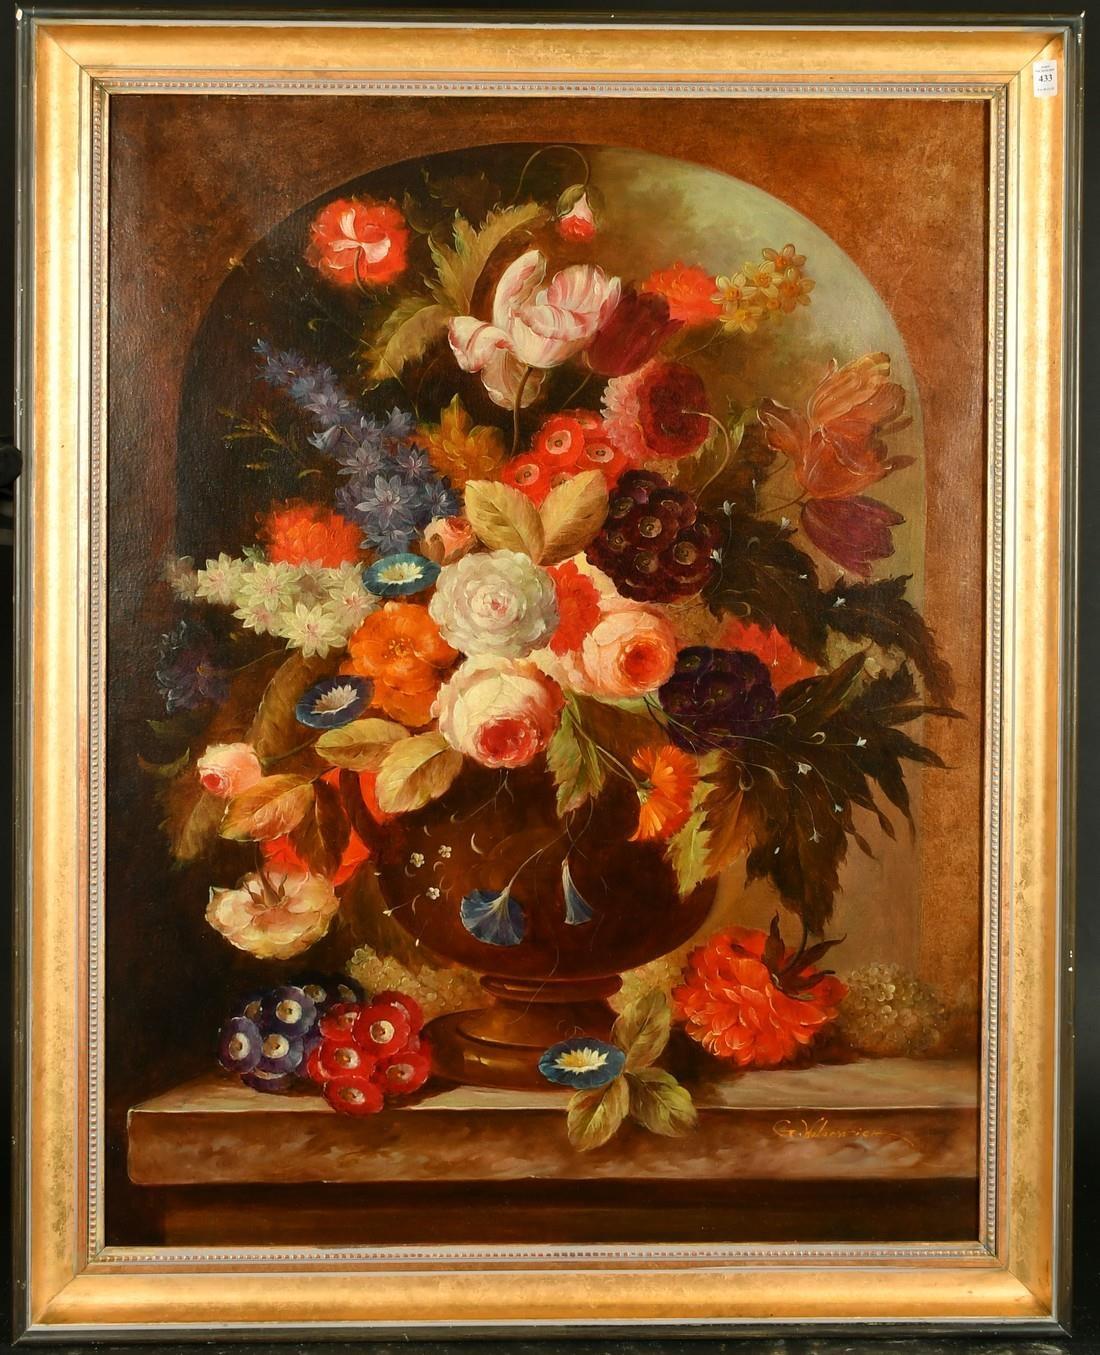 Groes klassisches Blumenstillleben, lgemlde mit gemischten blassblumen in Urne – Painting von G.Wabarwick